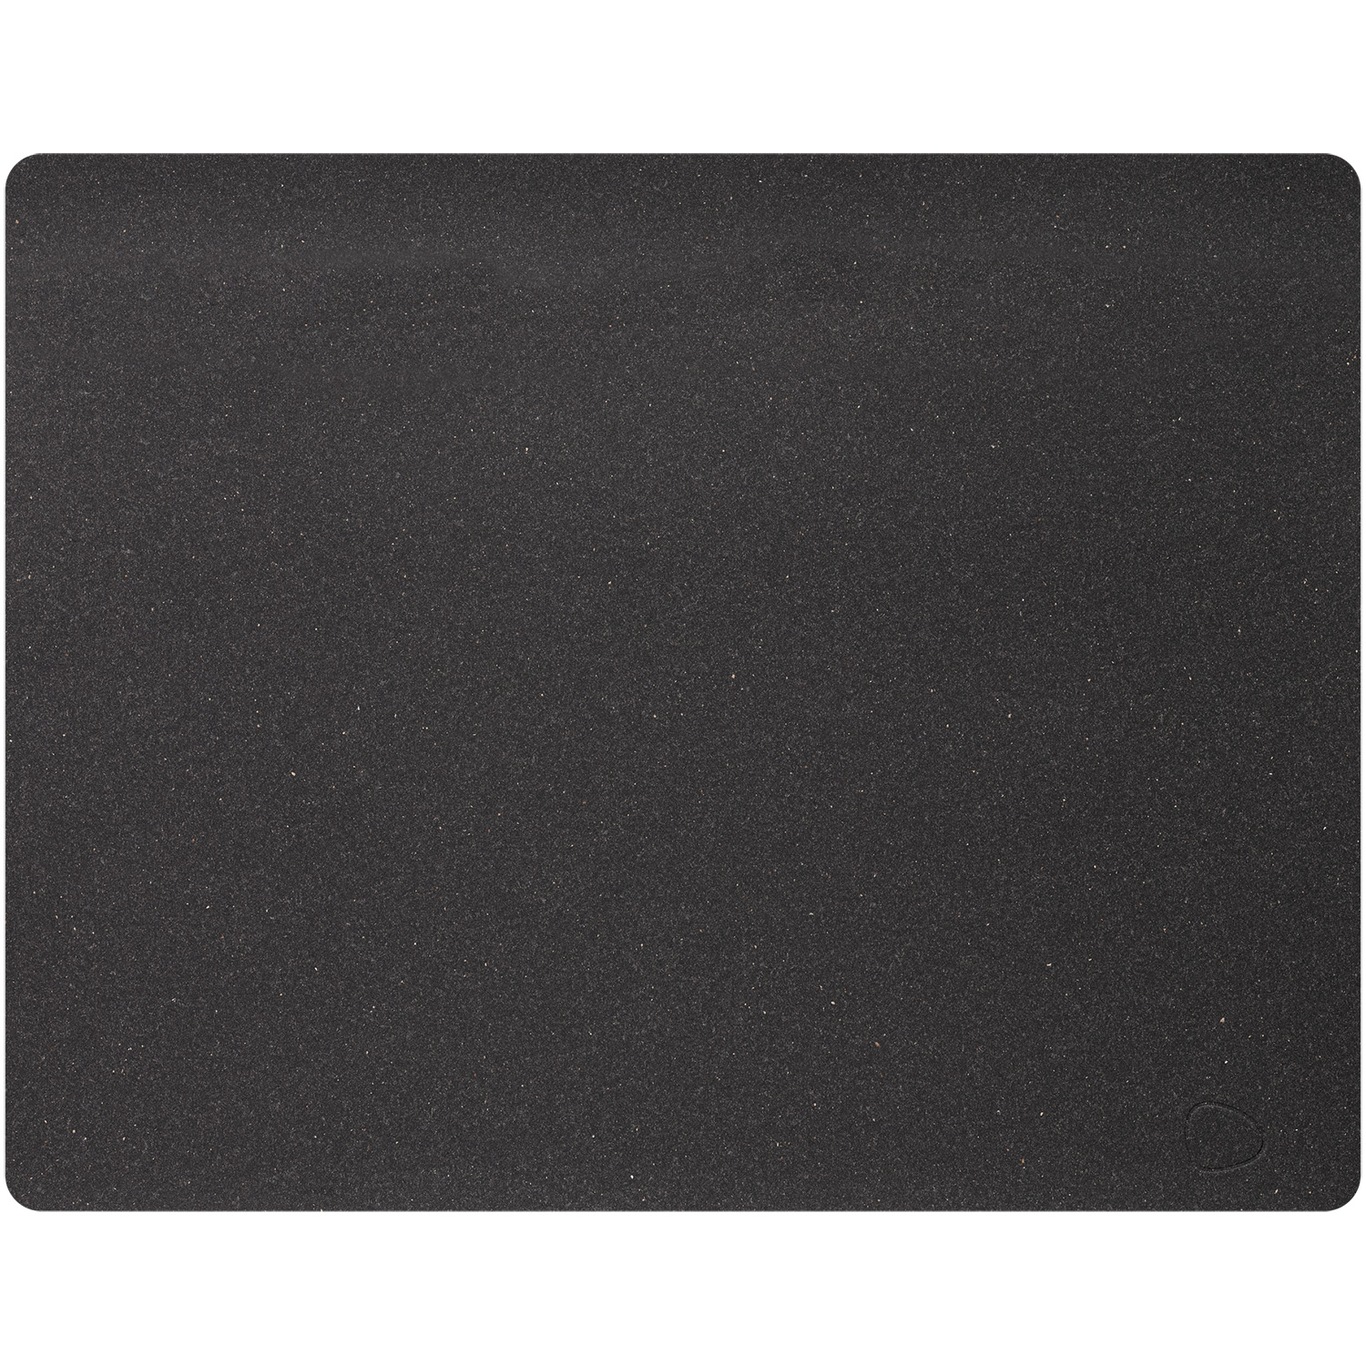 Square L Tabletti Core 35x45 cm, Flecked Anthracite